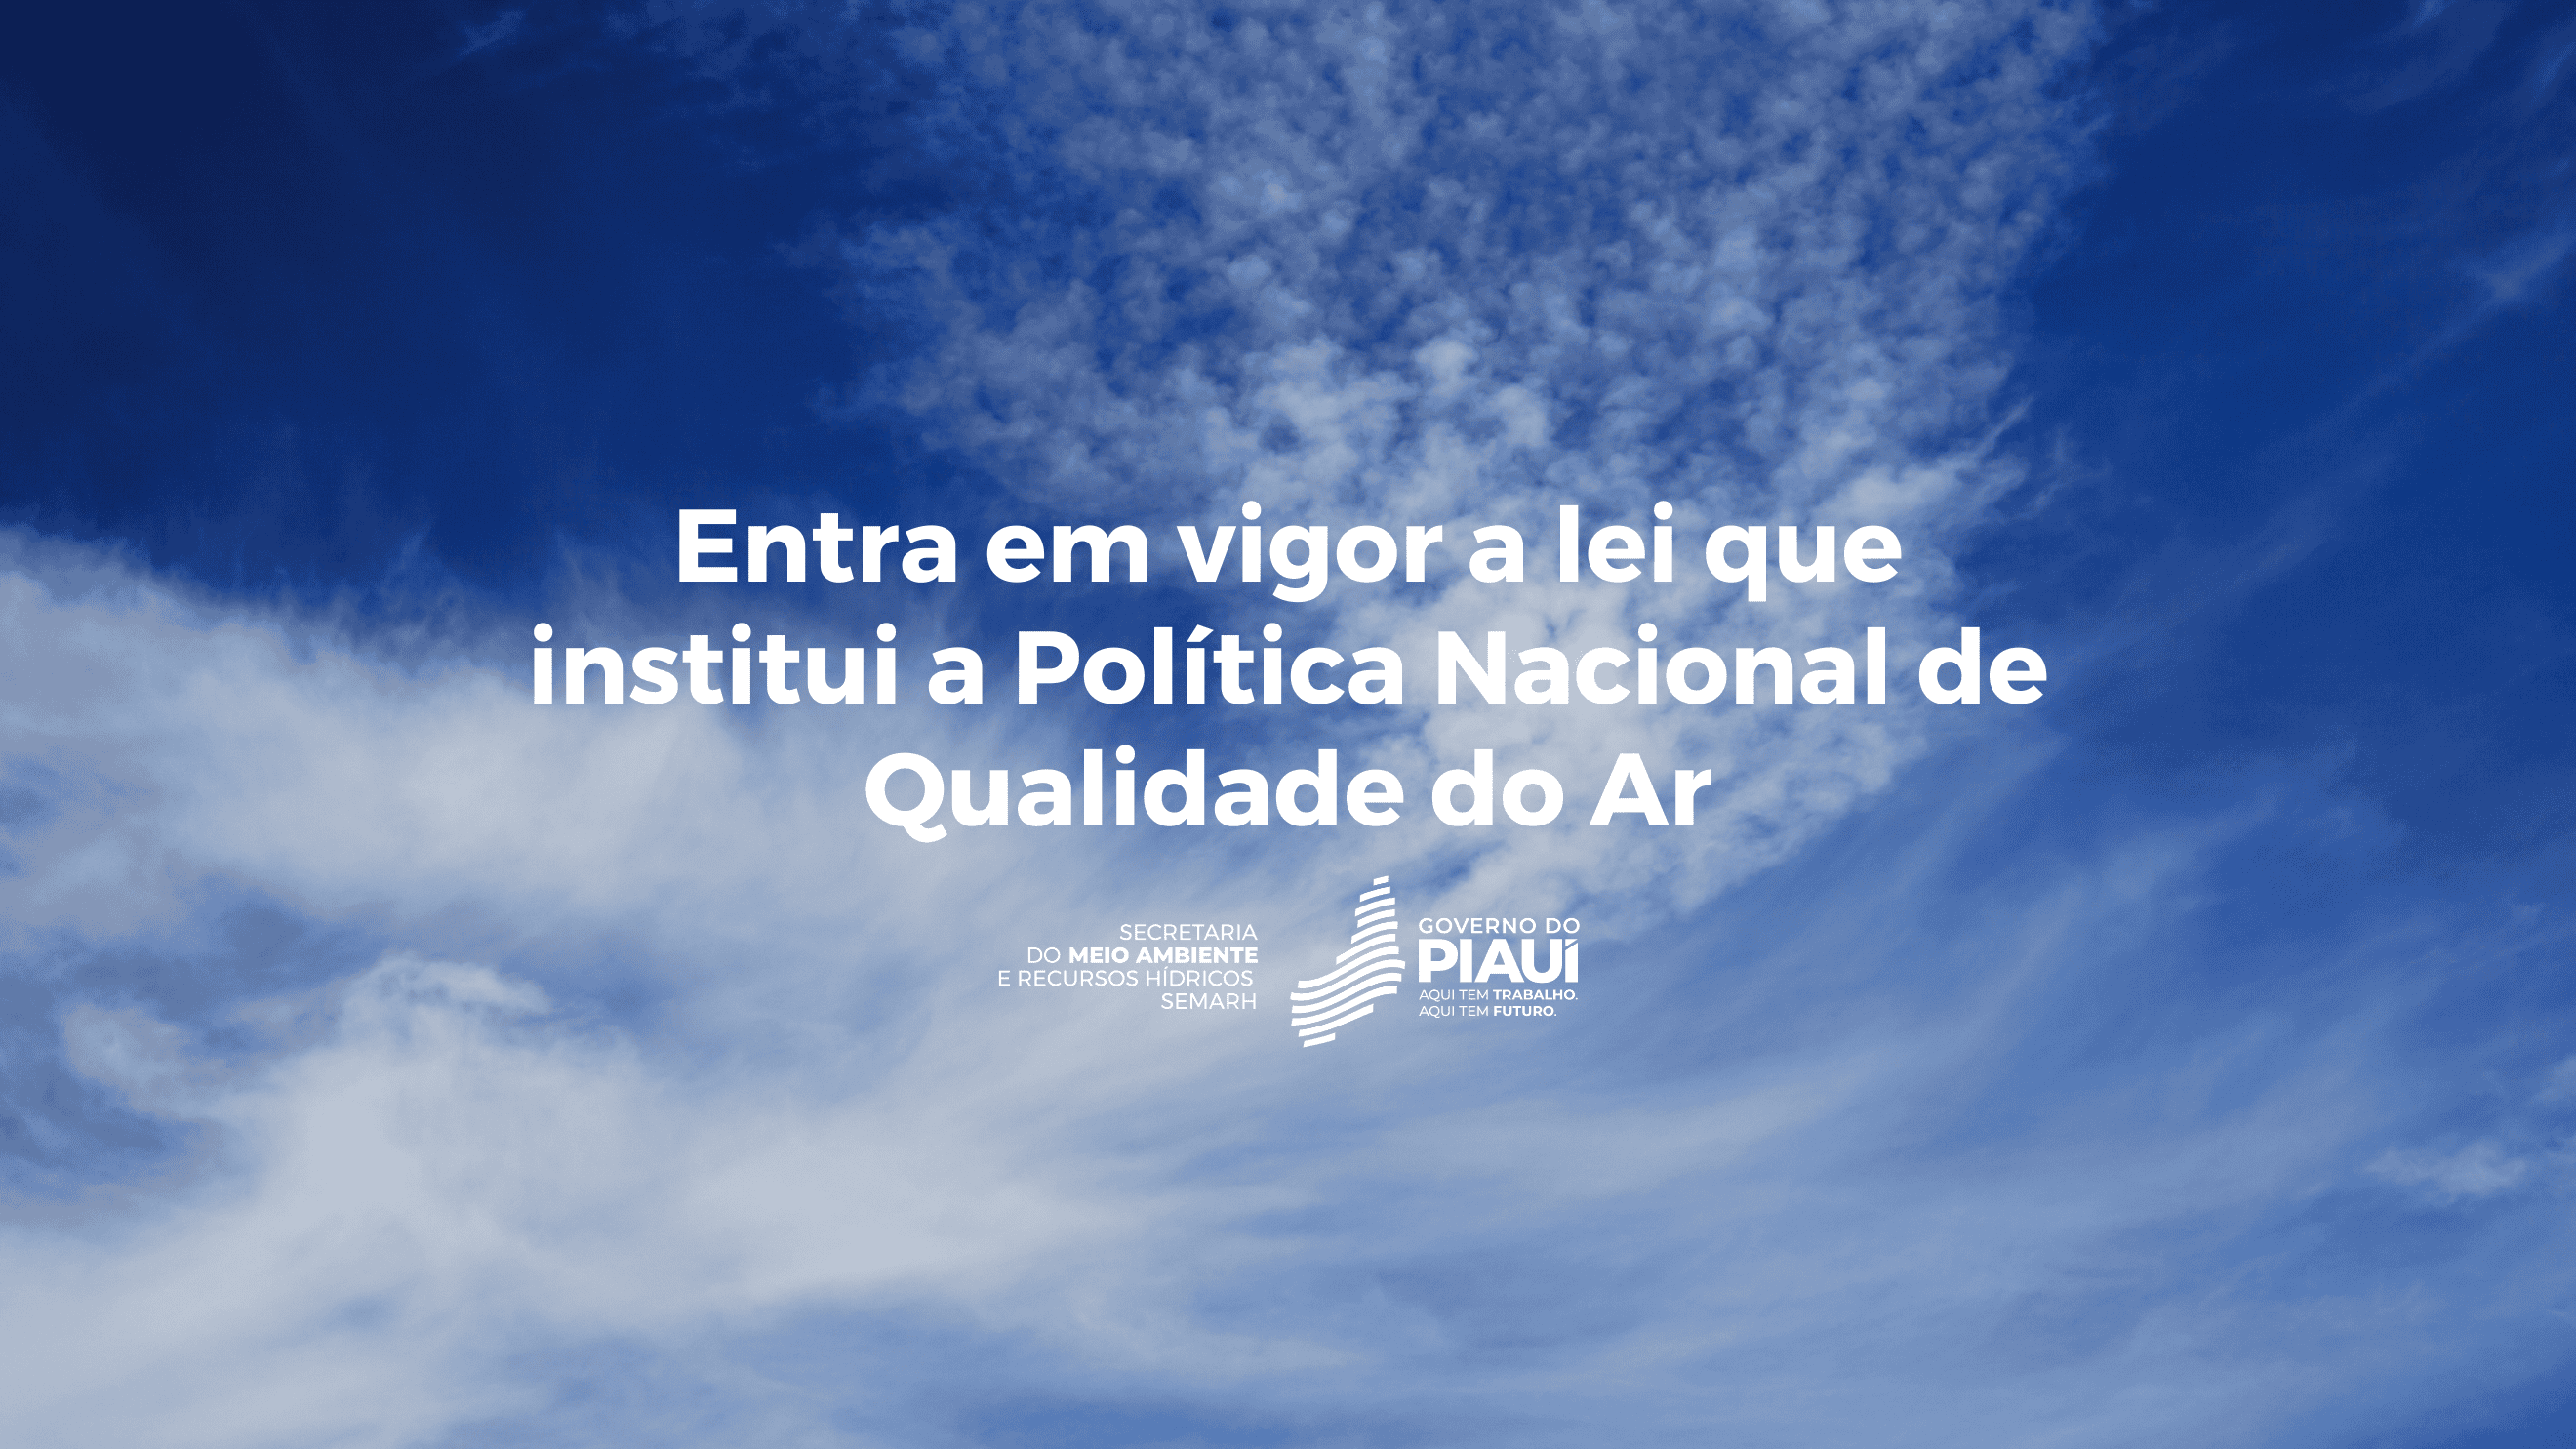 Secretaria do Meio Ambiente fará monitoramento da qualidade do ar no Piauí